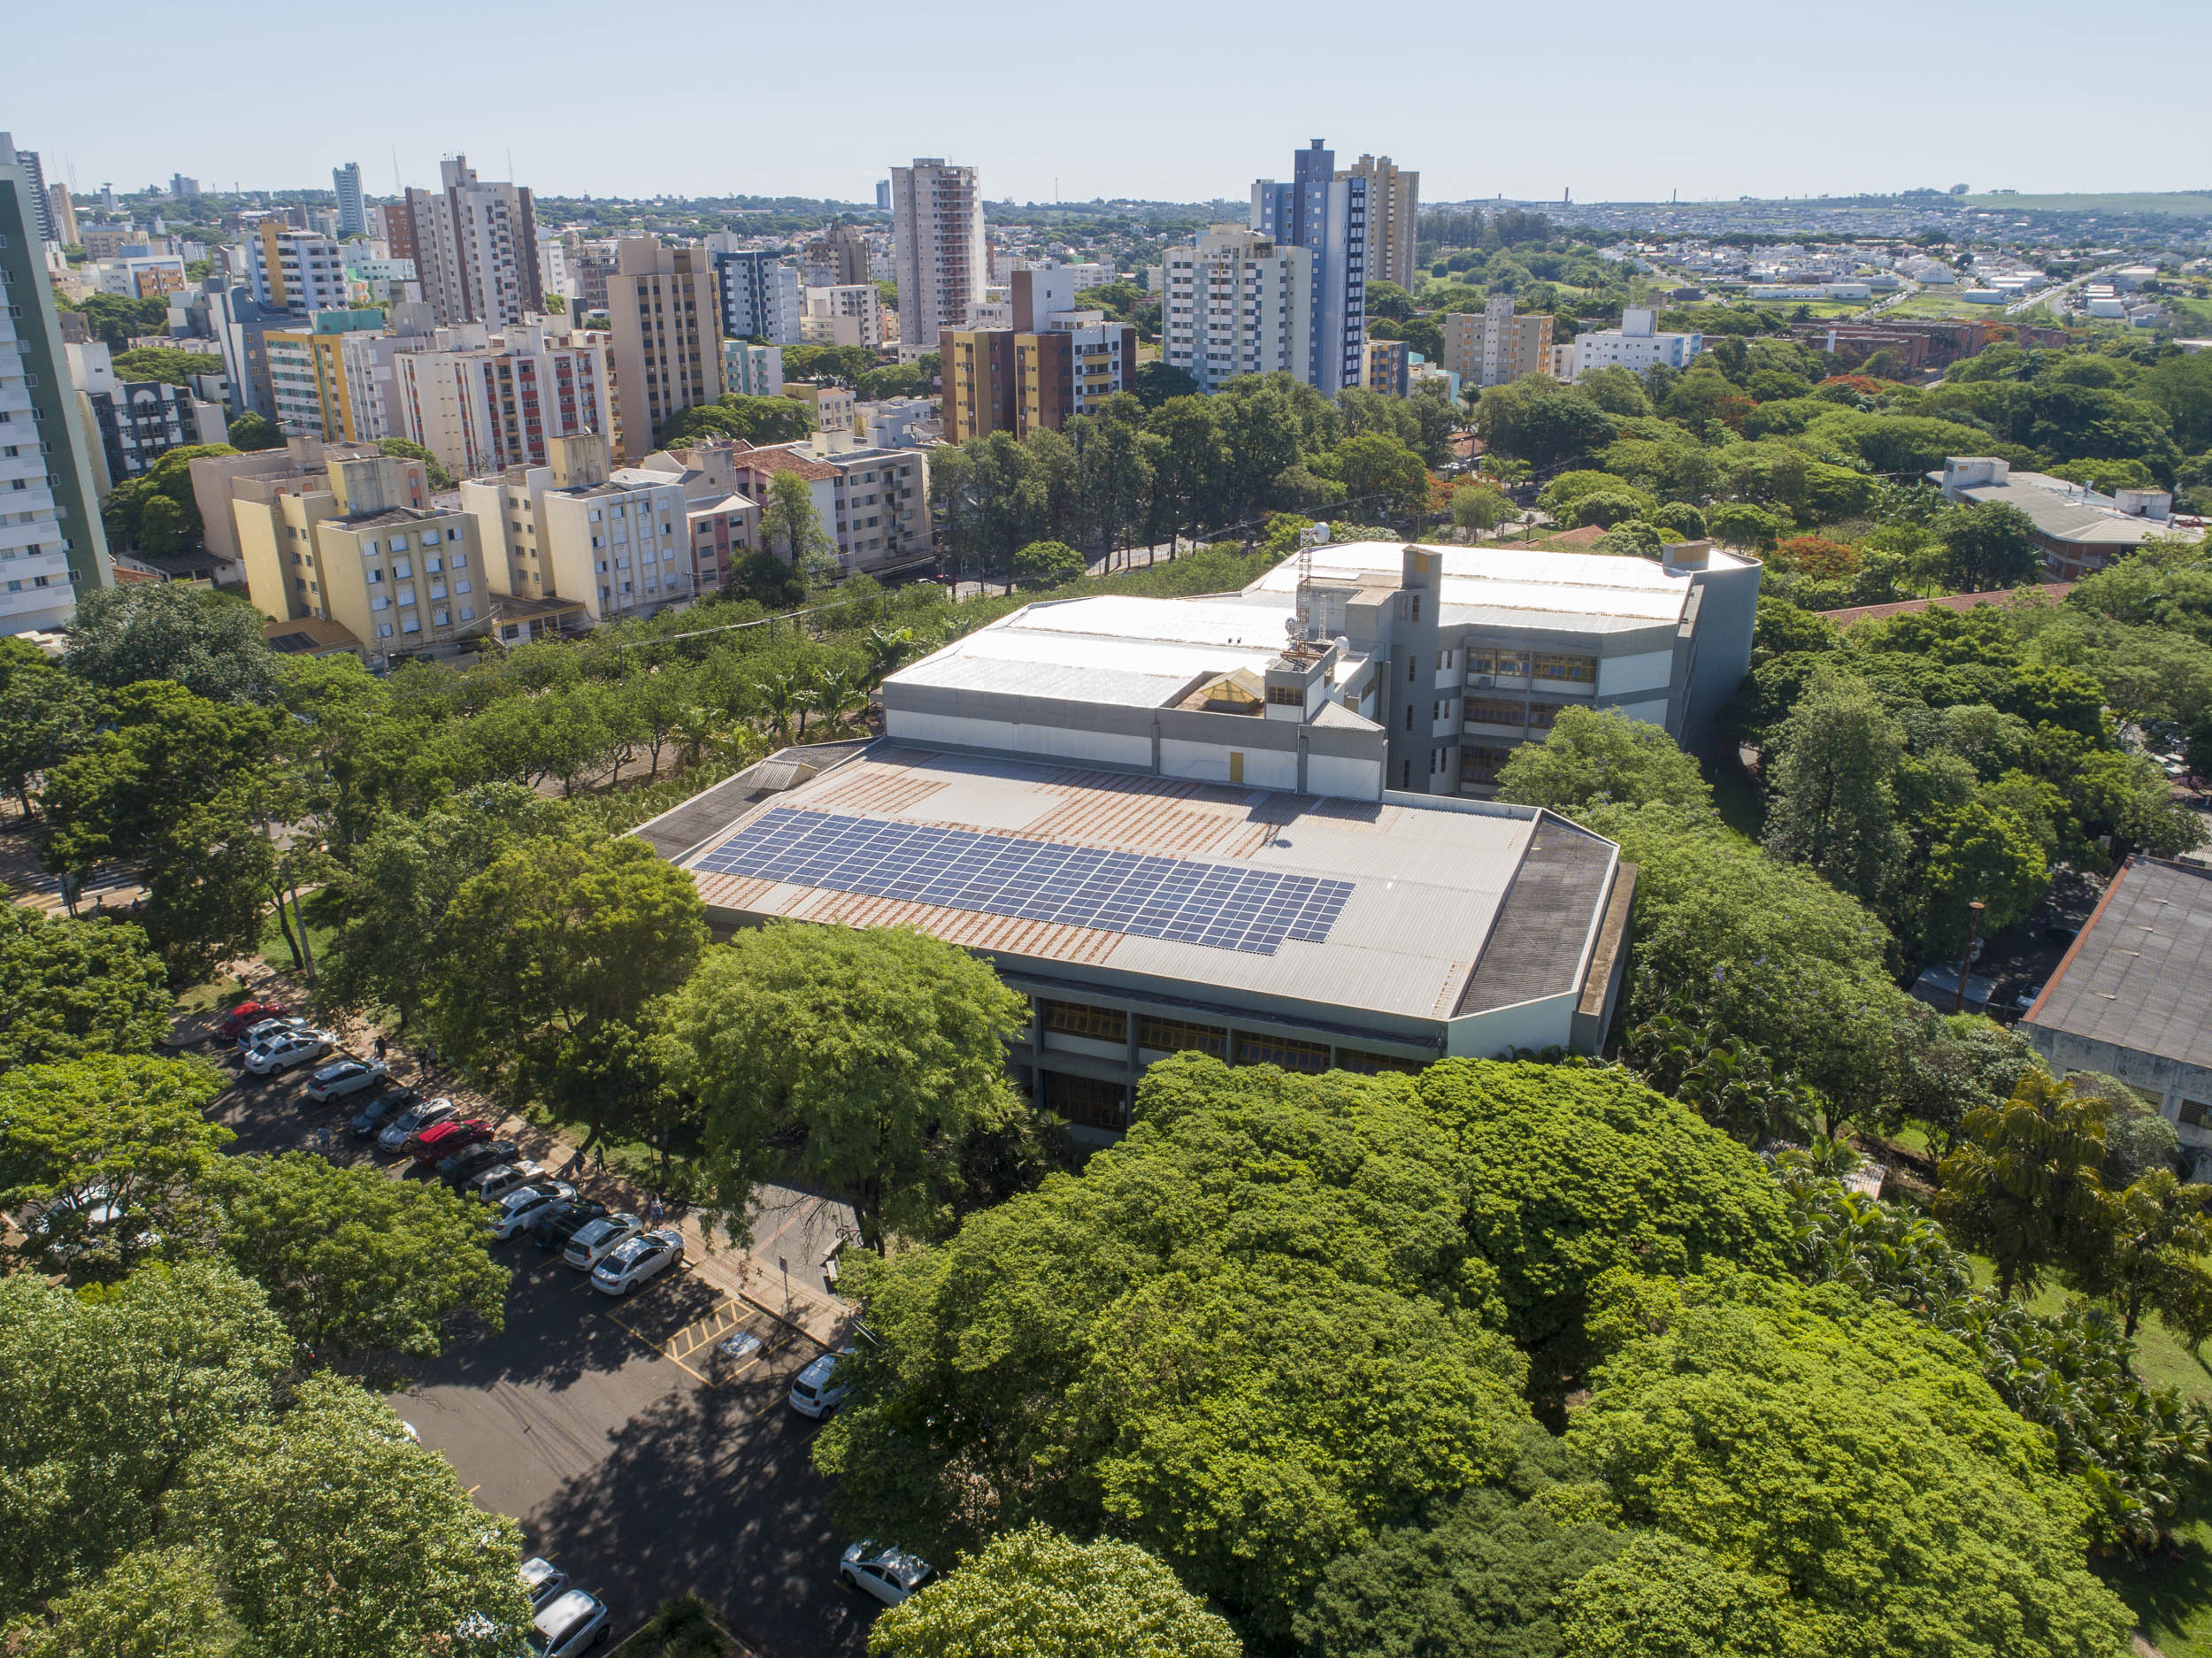 Eficiencia energetica 2019 11 19 Aereas Campus Placas Fotovoltaicas Blocos 0072